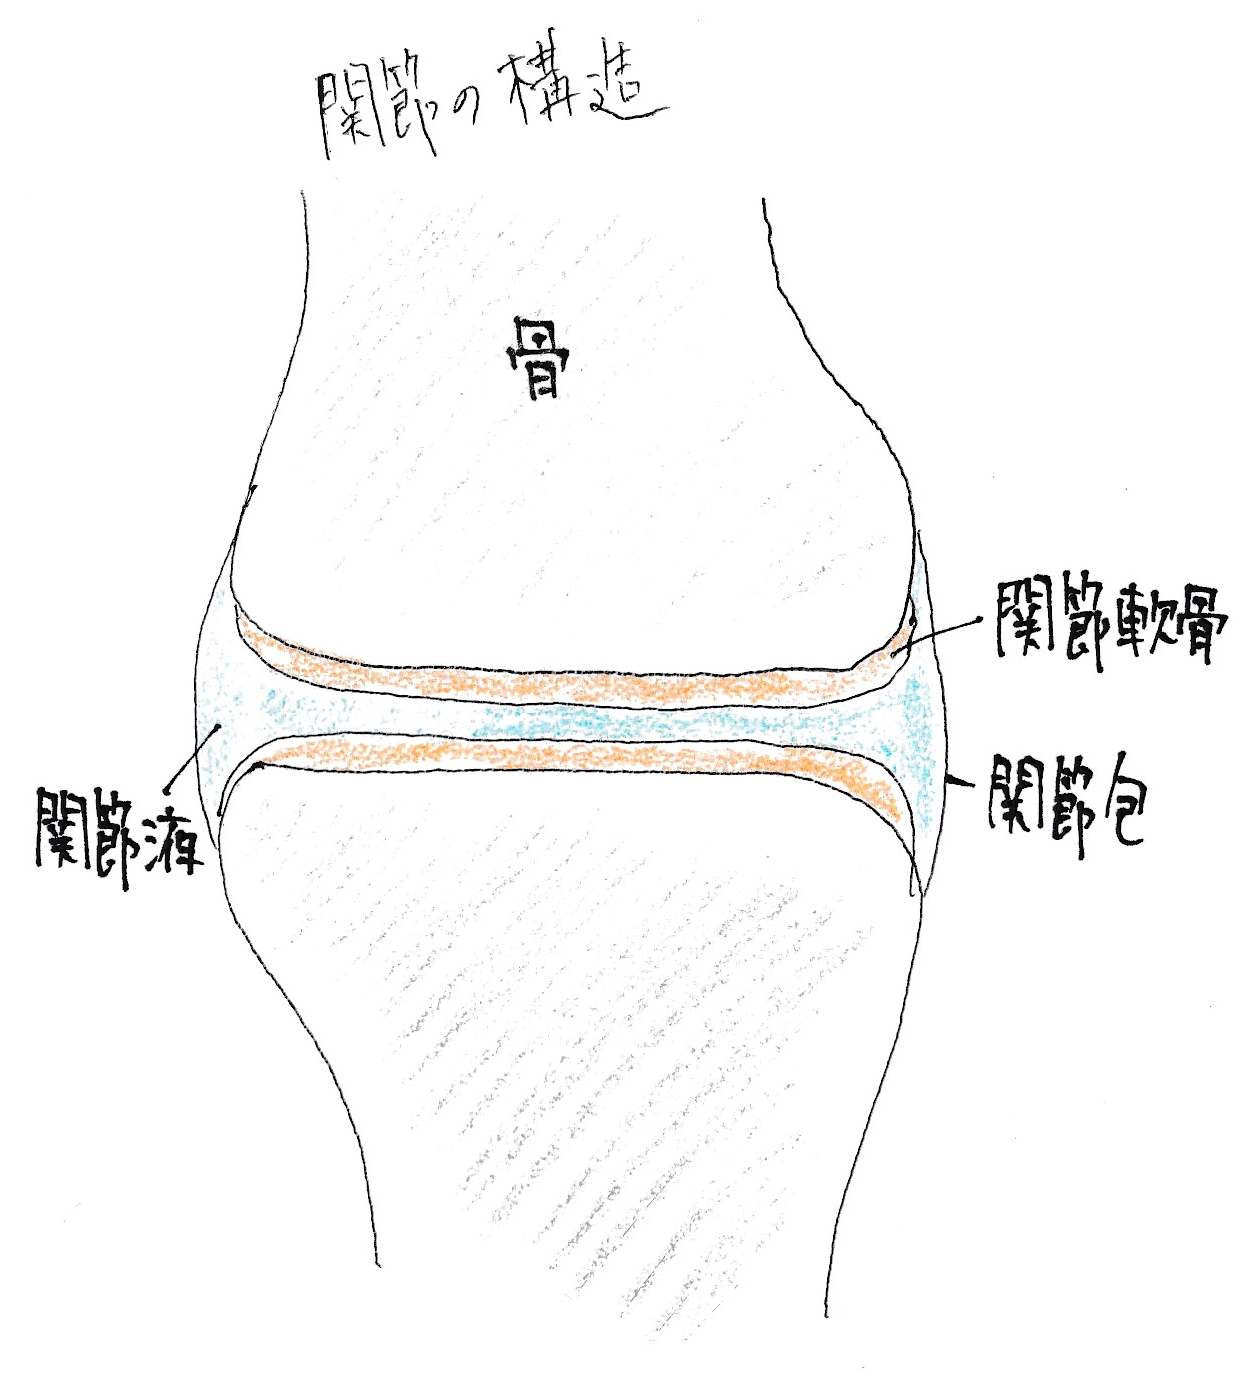 関節をポキポキ鳴らすと腰痛や肩こりの原因になる理由 福井県坂井市の整体師が解説